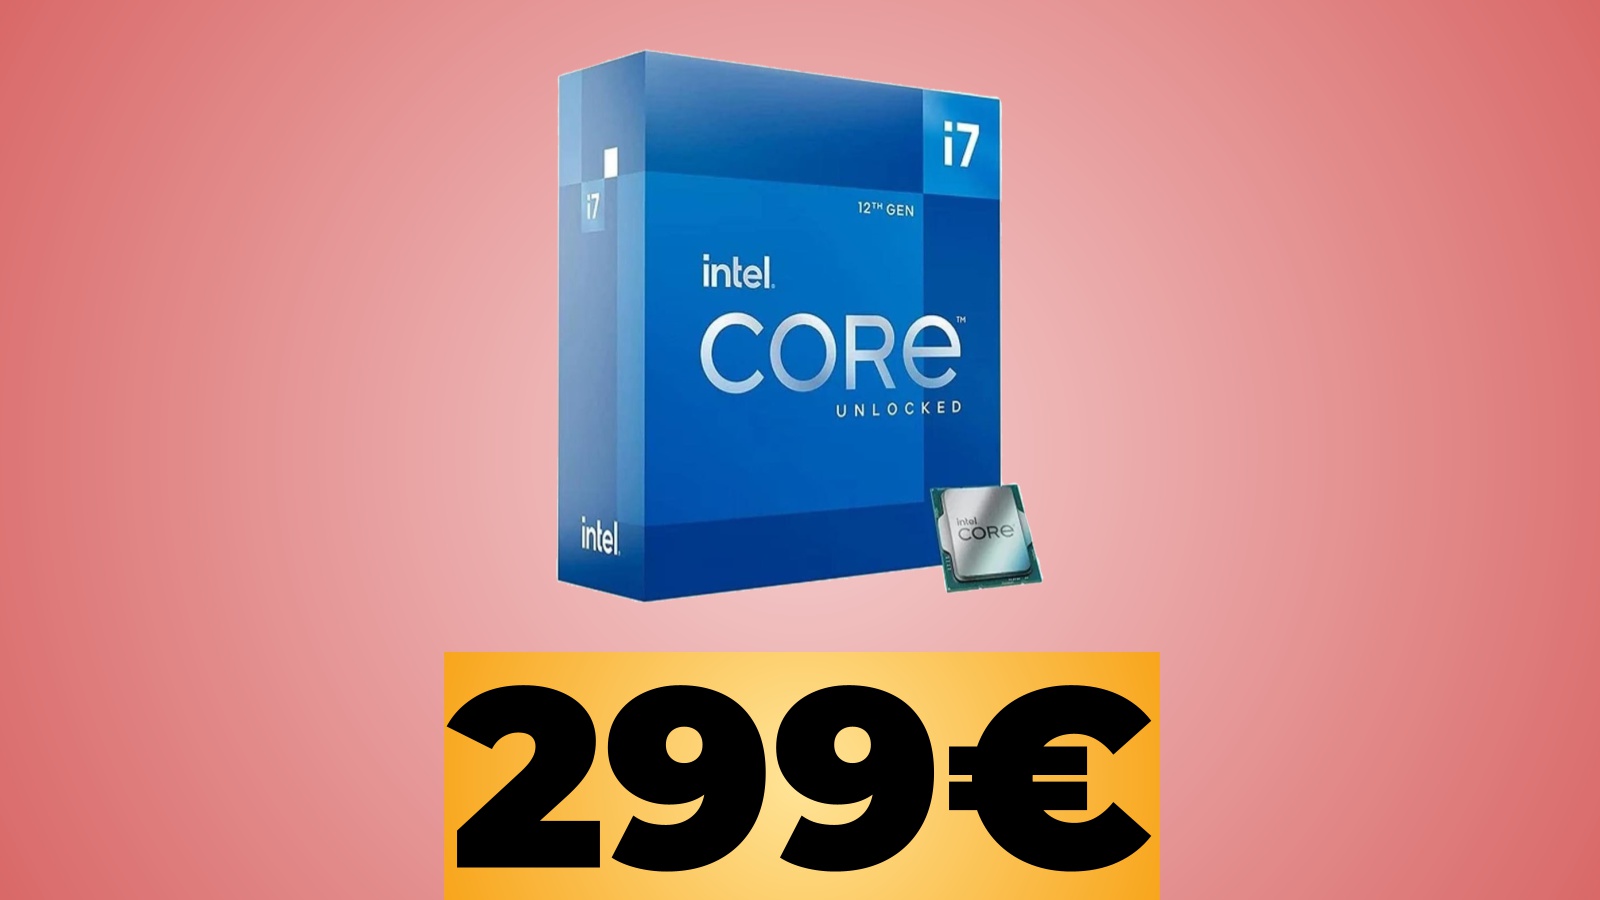 Intel Core i7-12700K è ora in sconto su Amazon Italia al prezzo minimo storico